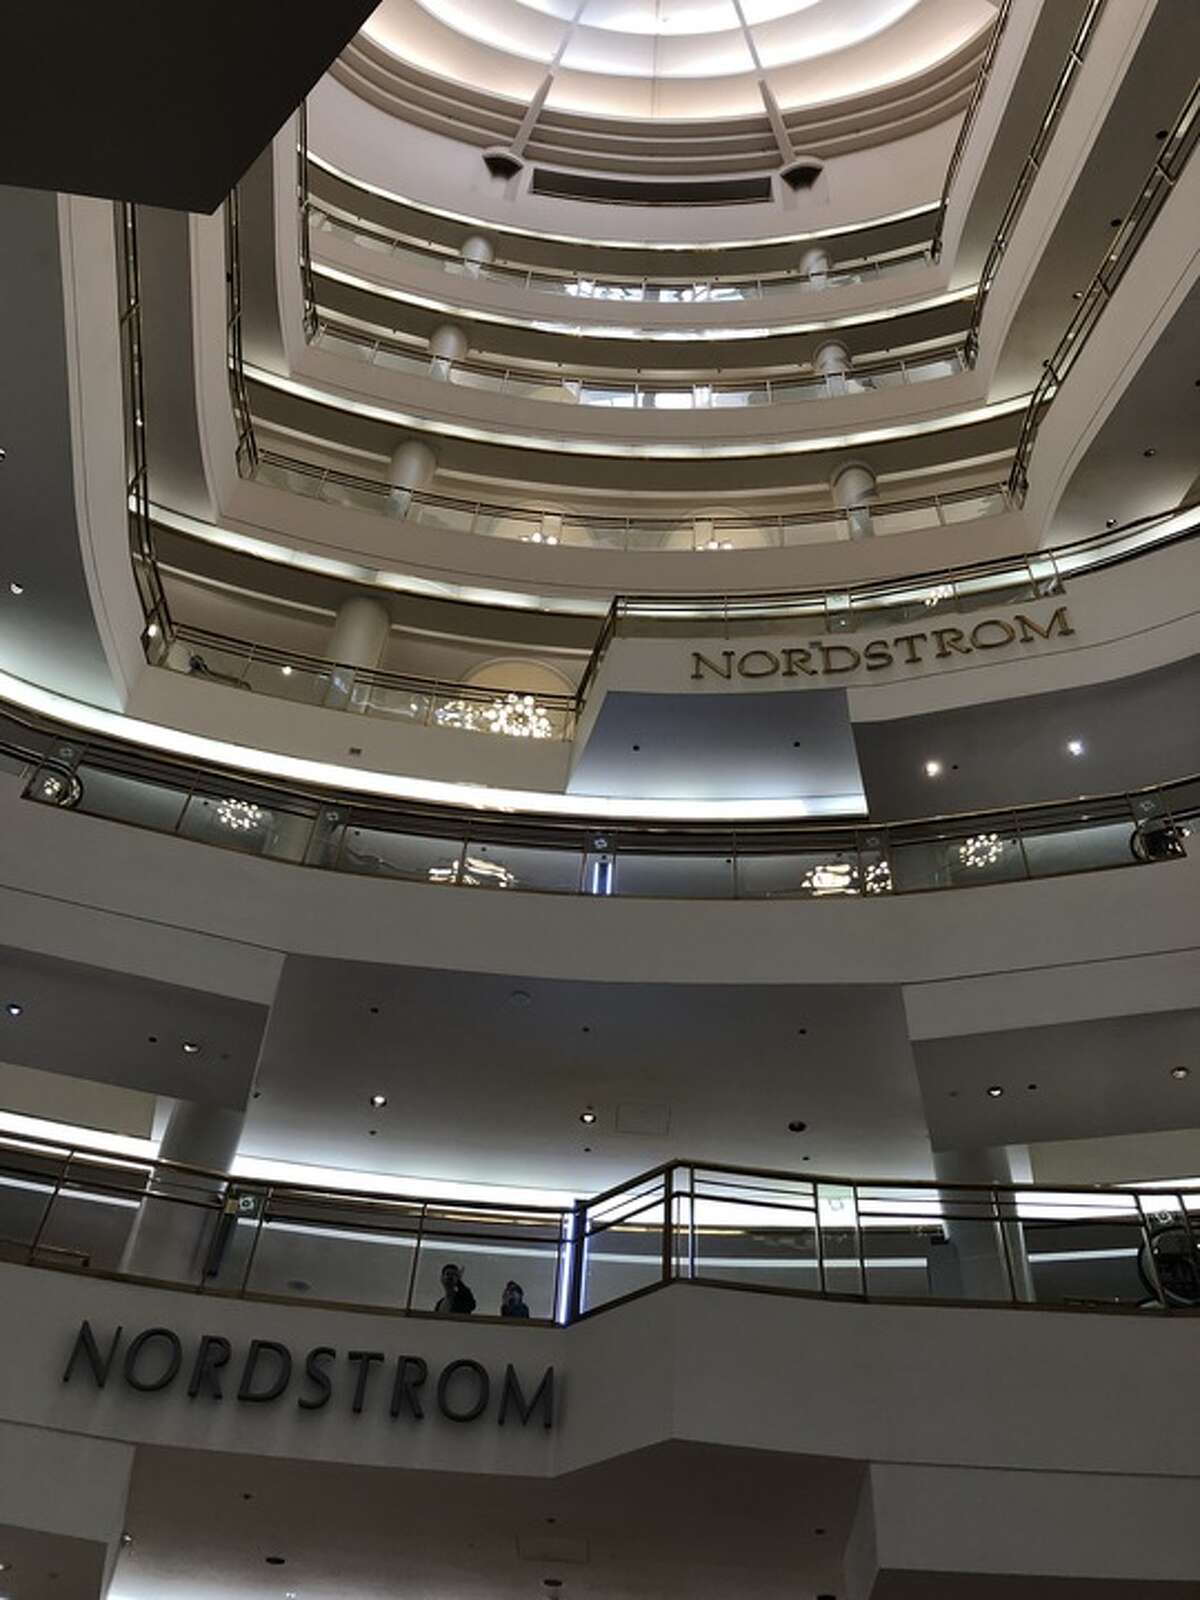 Nordstrom gets new look + online service - Store Reporter